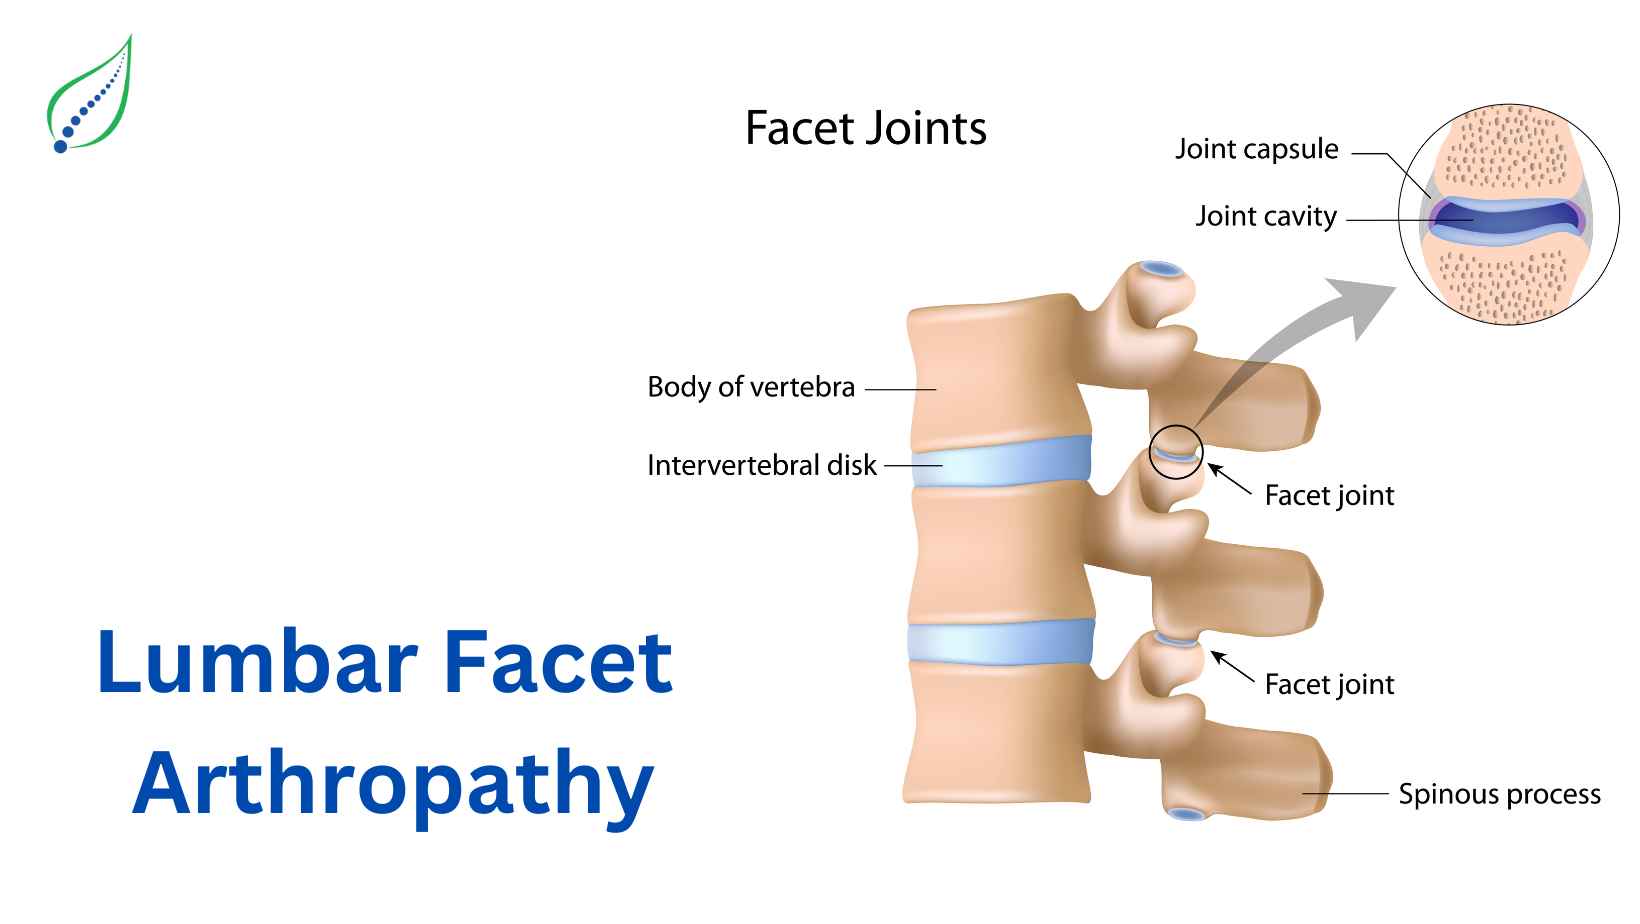 Lumbar Facet Joint Arthropathy